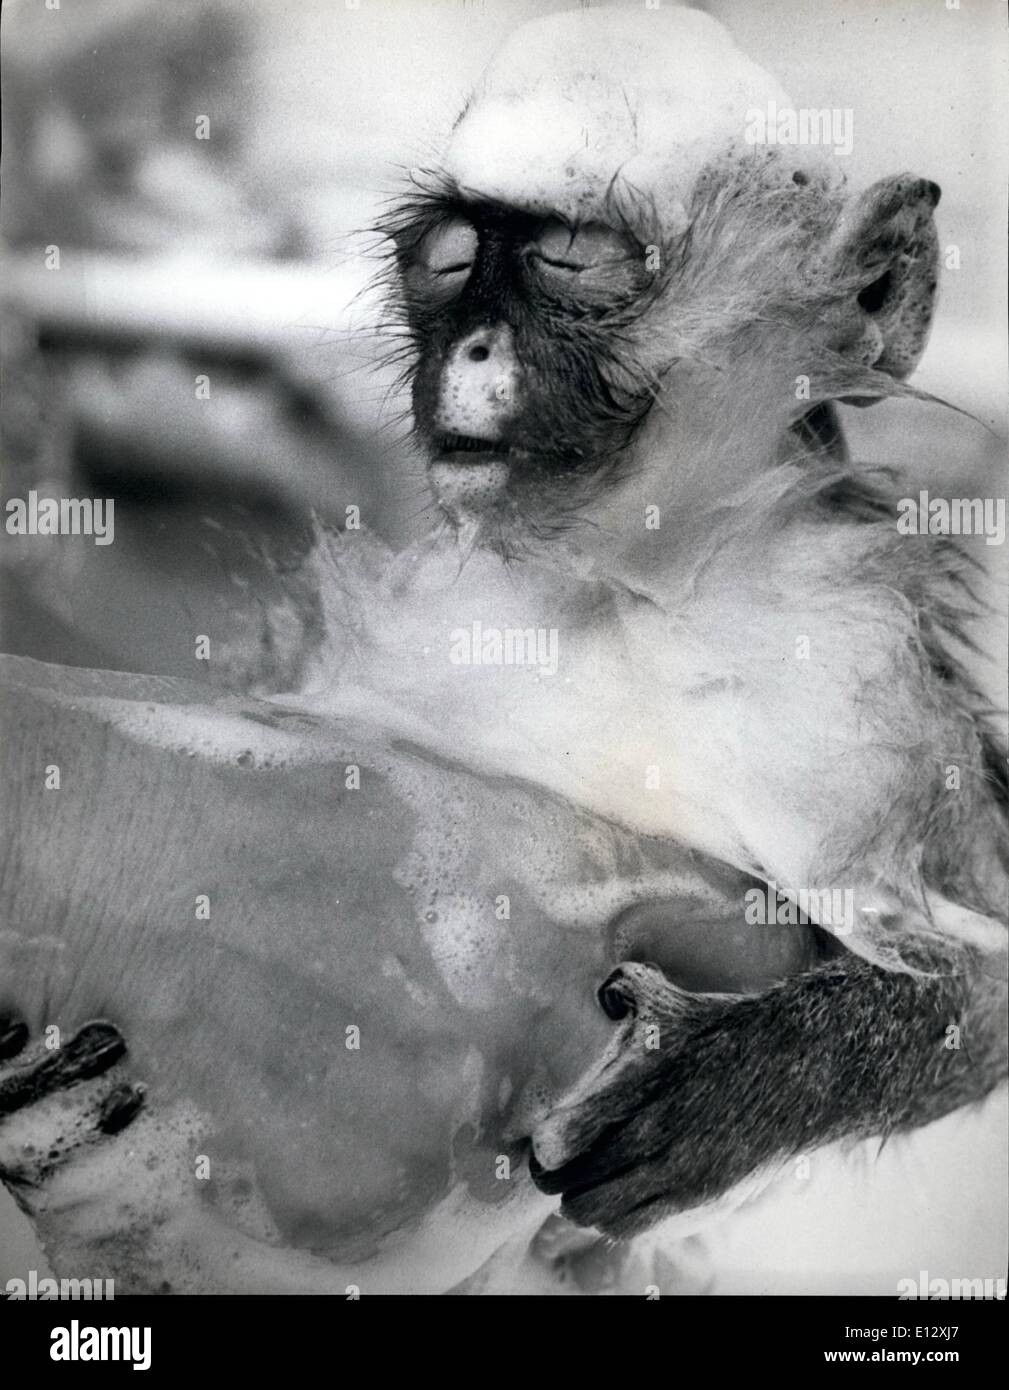 25 février 2012 - Mme Bailey's mon amour leur baignoire de temps de lit. Ce singe regarder comme si il apprécie chaque minute. Banque D'Images